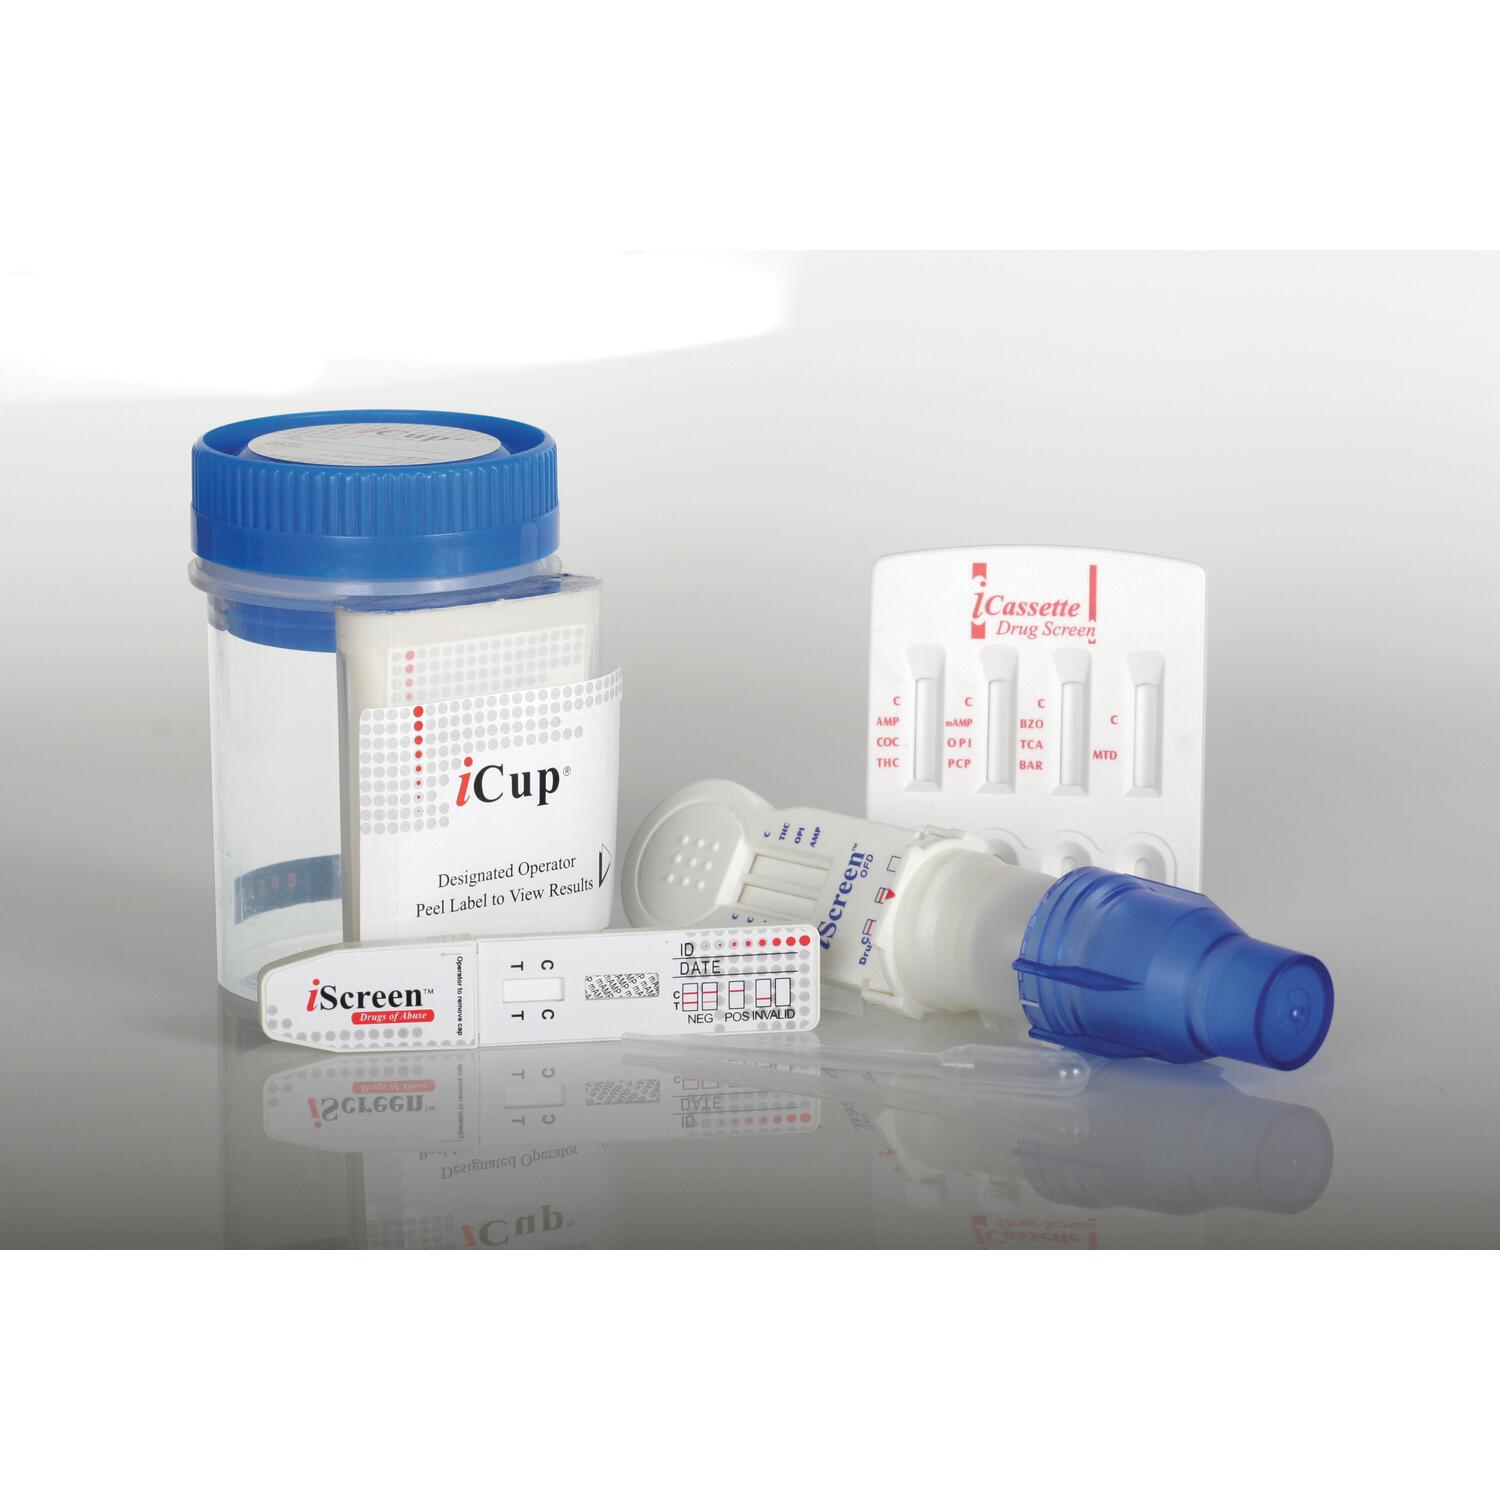 Medline Urine Cup Drug Tests 6 Panel Combo A